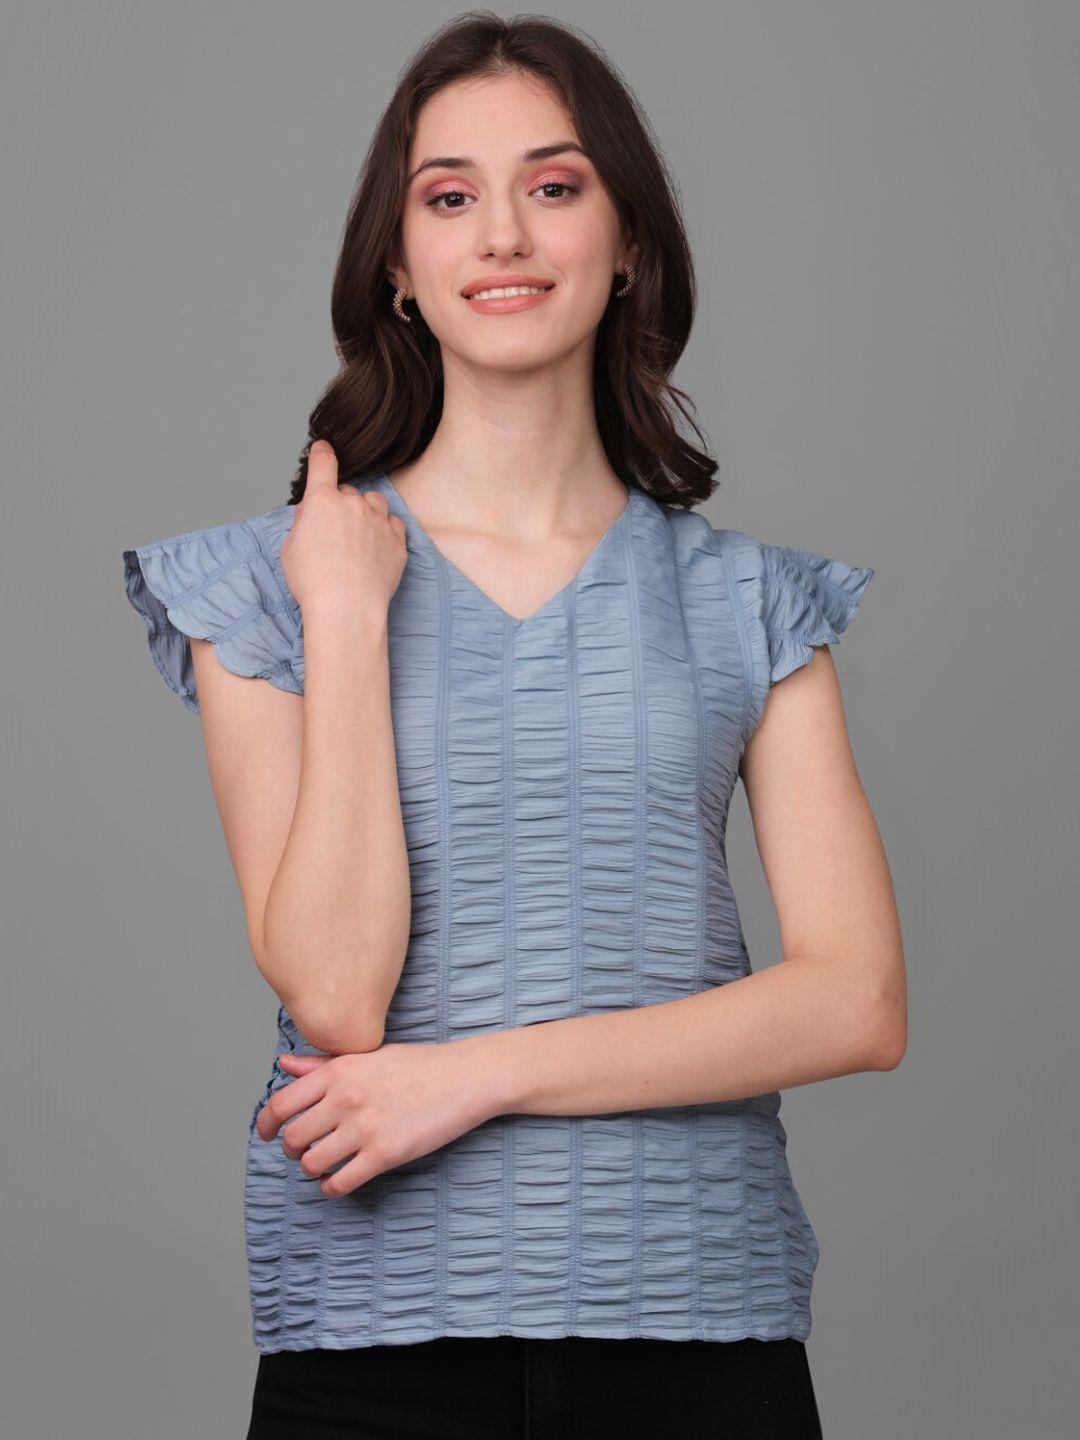 modestouze attires self design v-neck flutter sleeves top